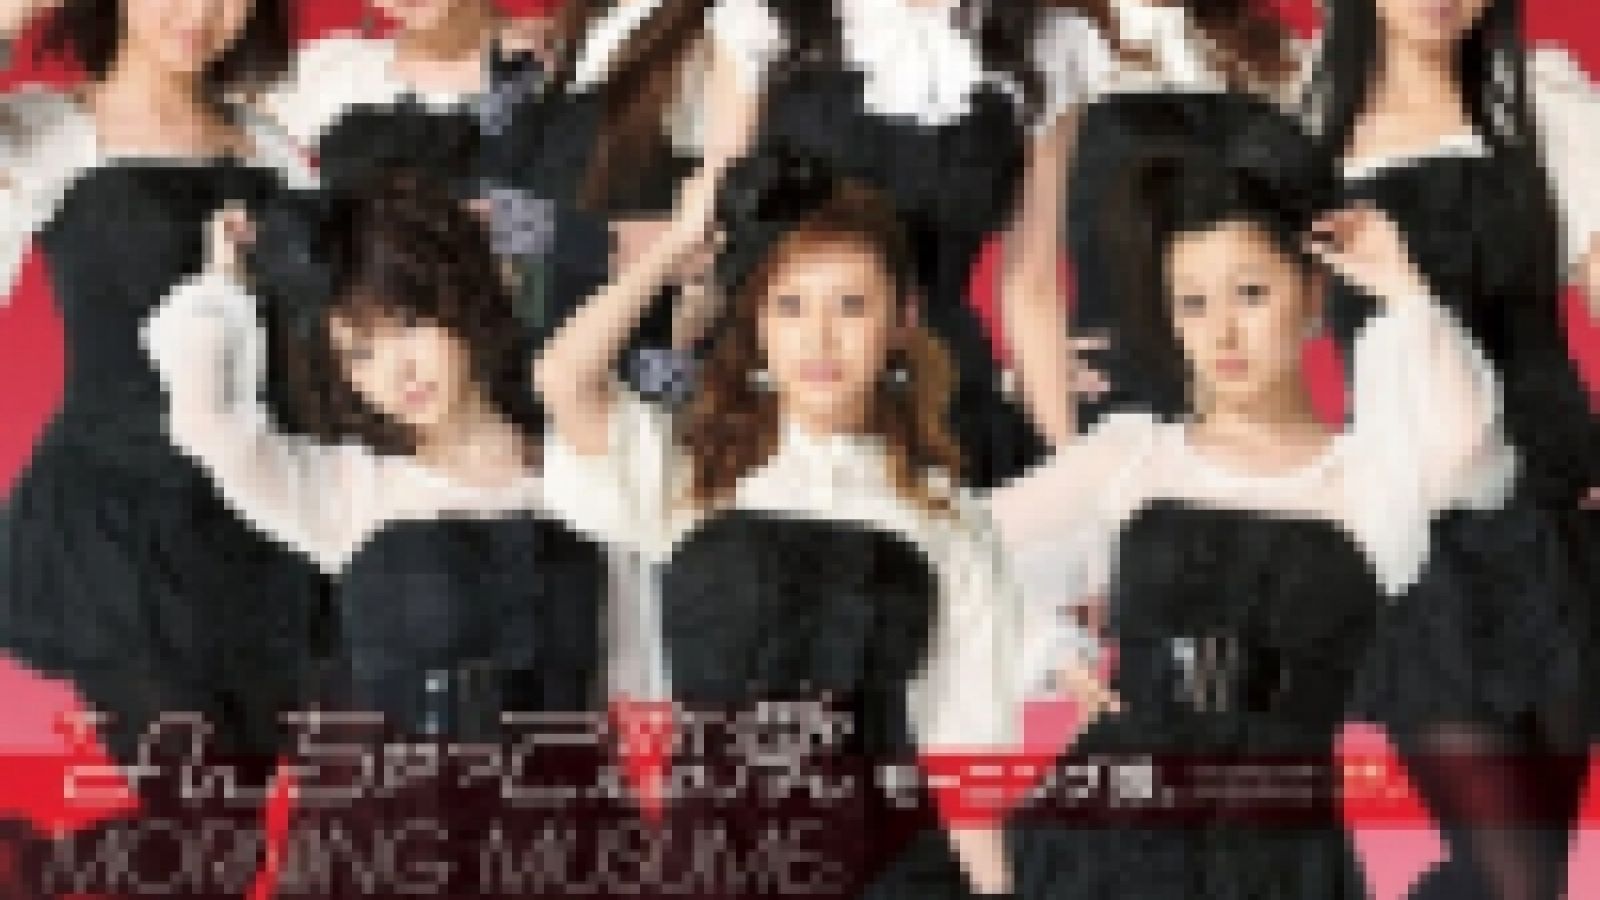 Detalles del single y el Music Video DVD de Morning Musume. © JaME